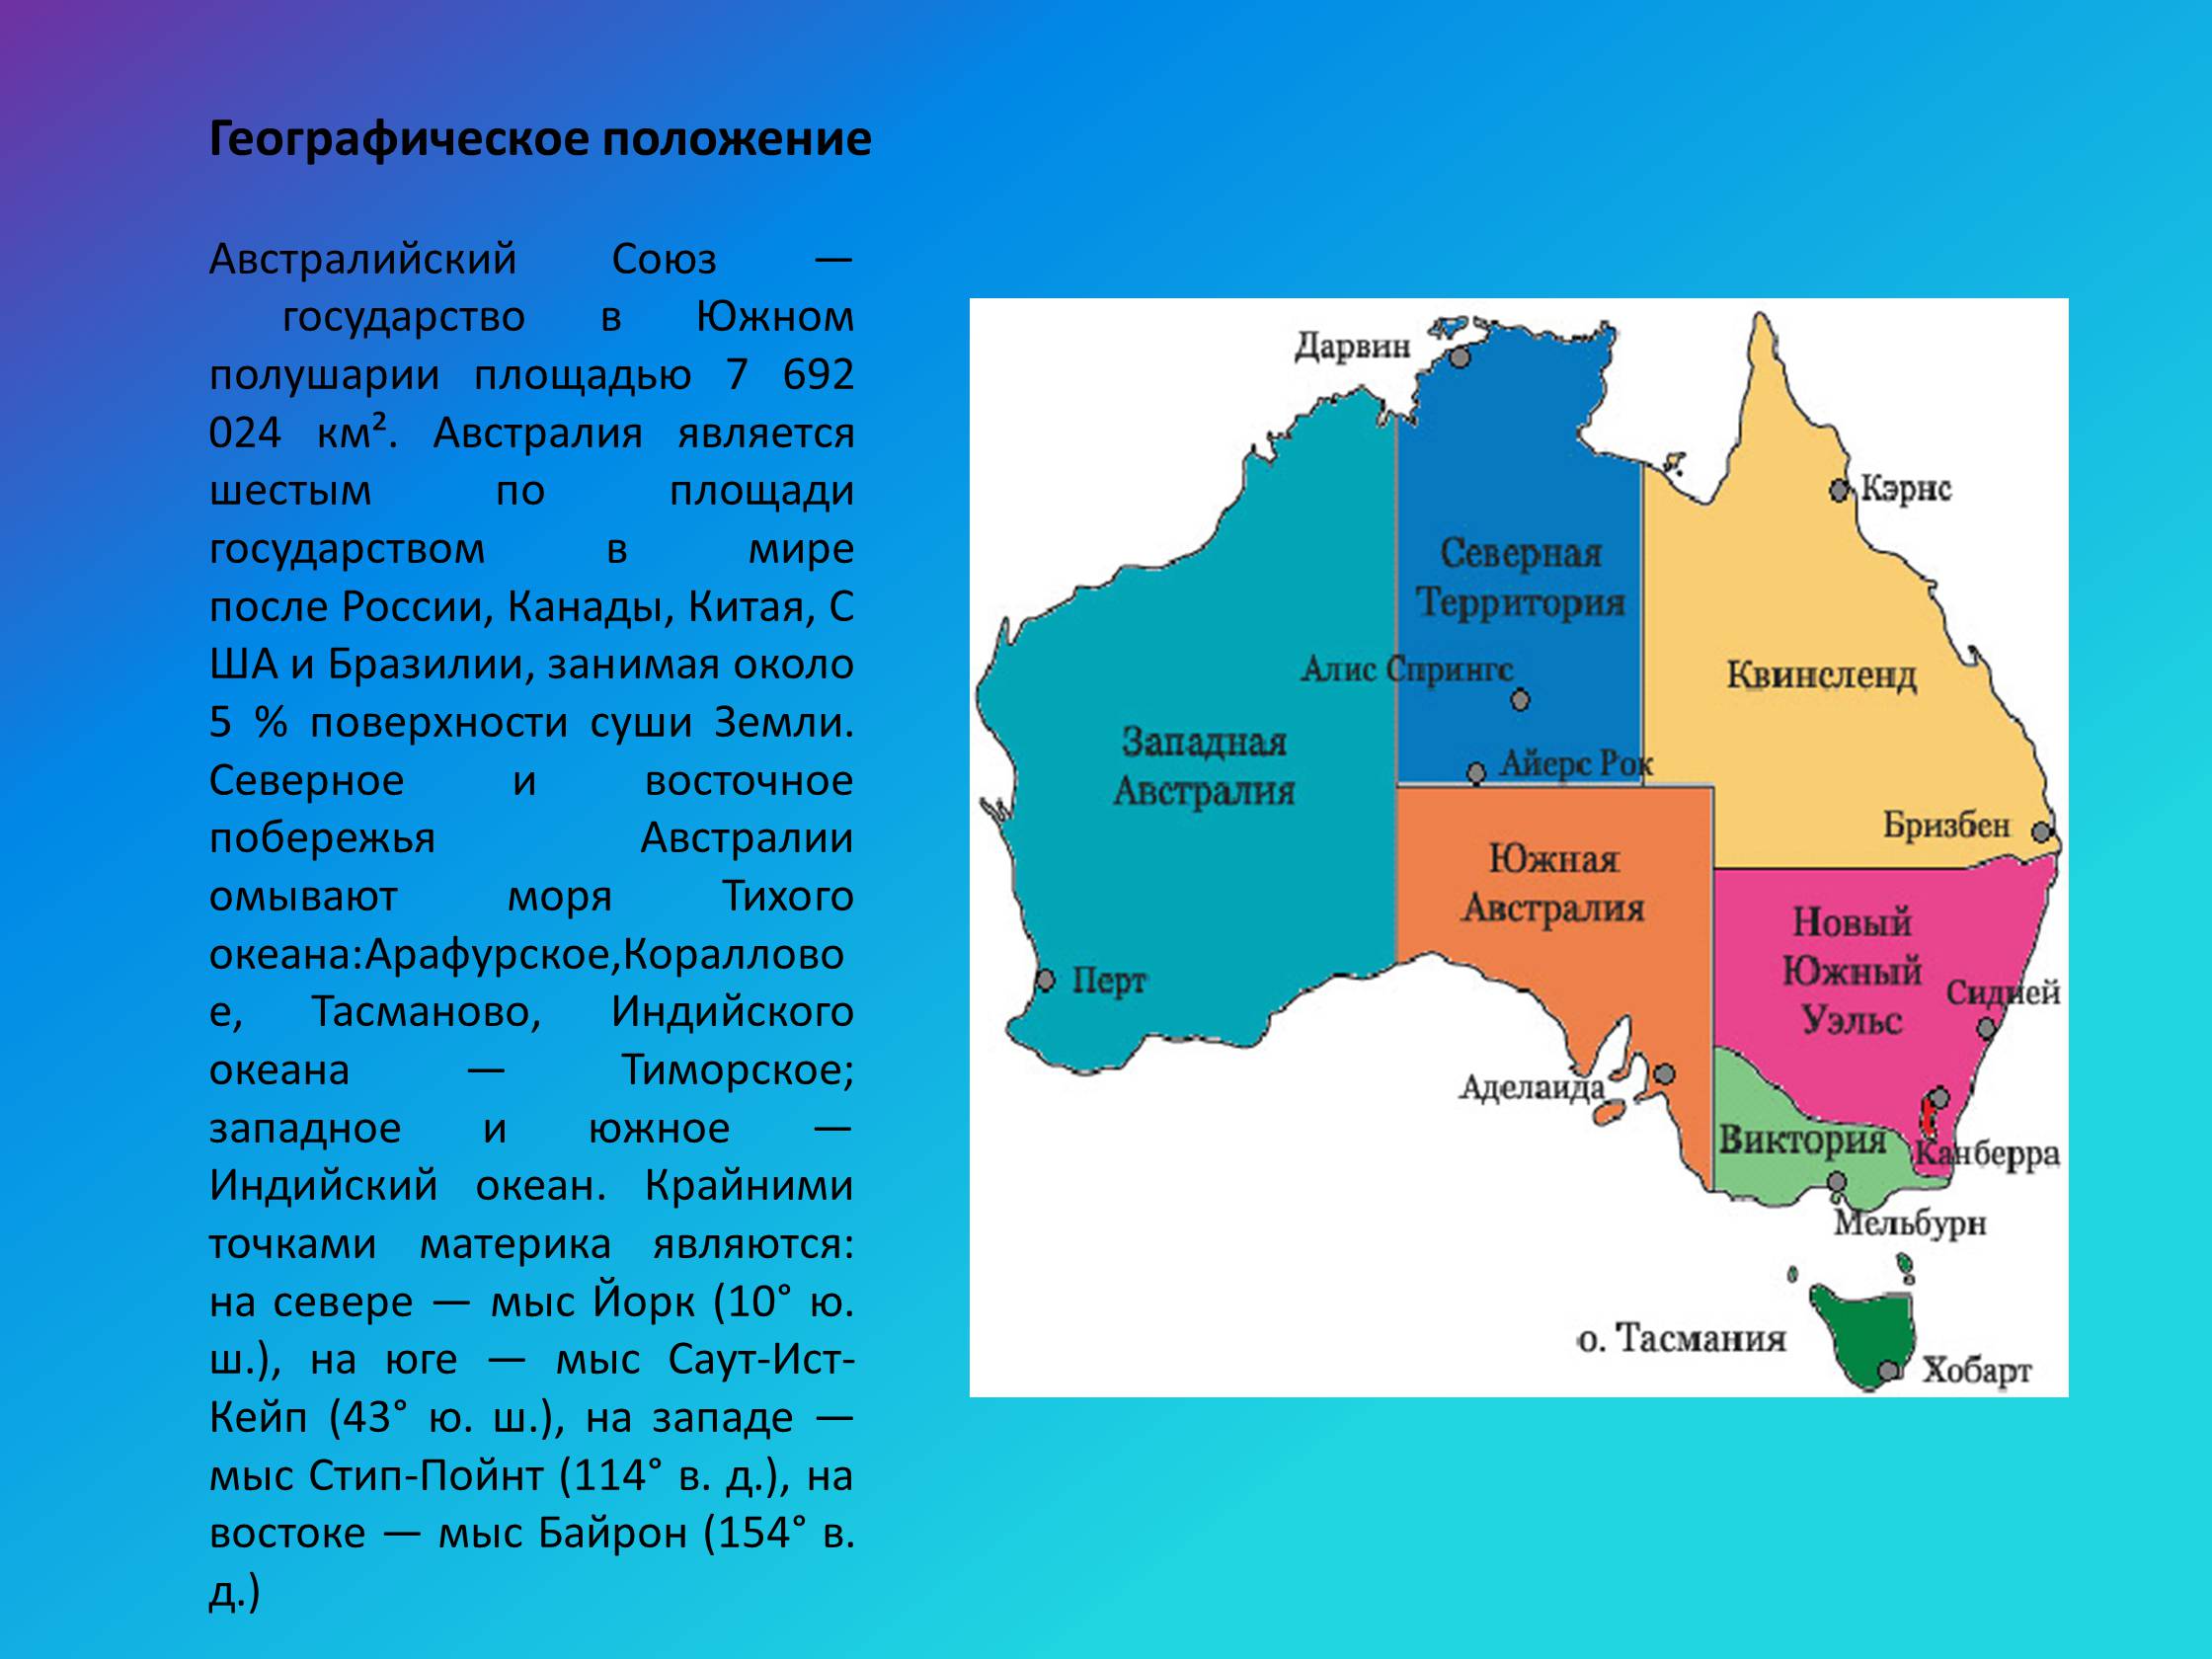 Крупнейшие города страны австралии. Западная Австралия географическое положение. Расположение австралийского Союза на материке. Географическое положение Австралии и австралийского Союза. Географическое положение Юго Западной Австралии.